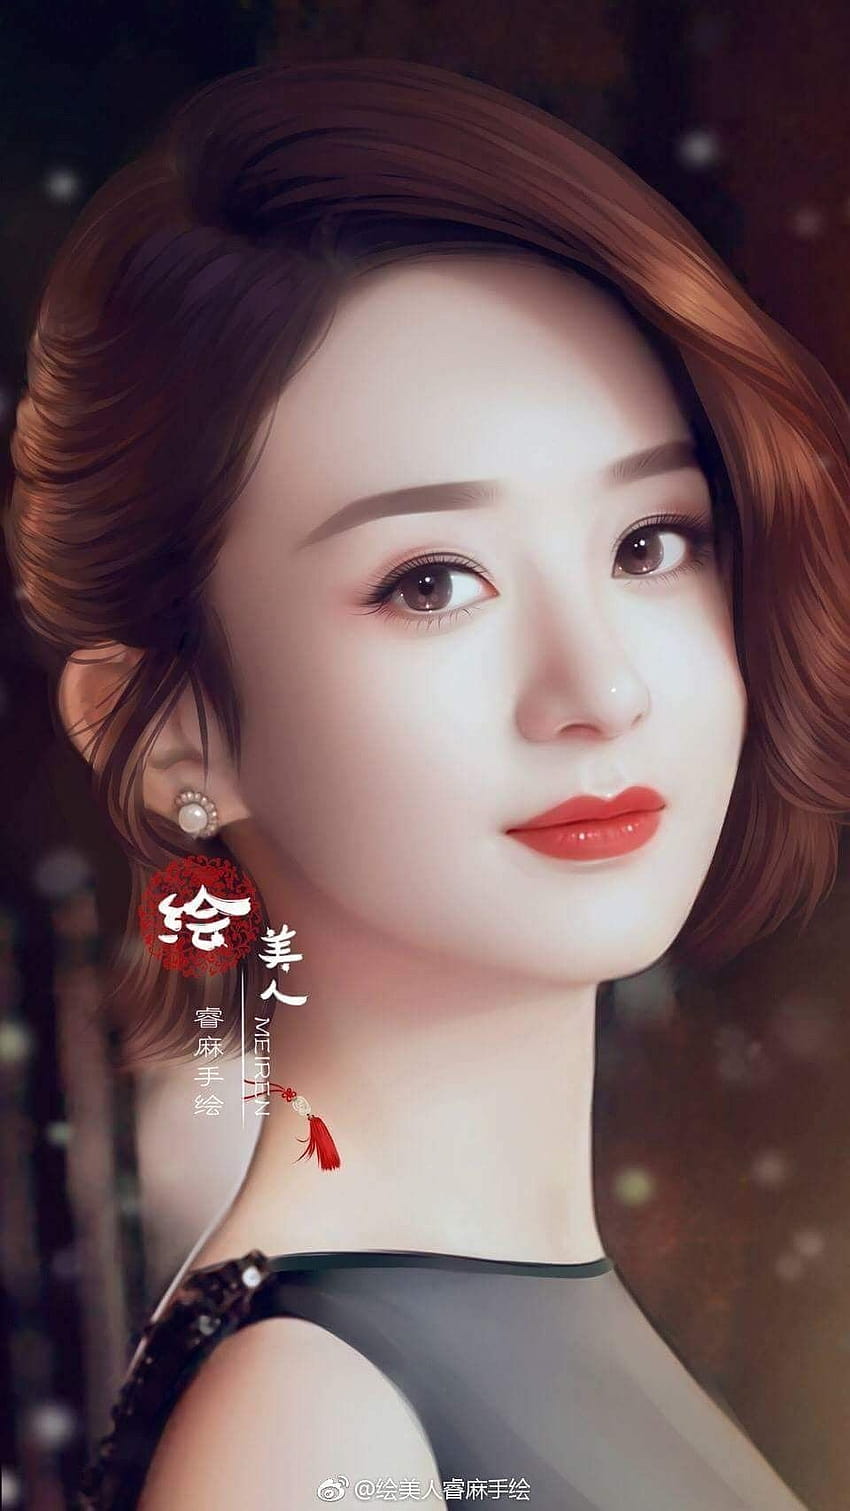 Low Chiah Kia auf 赵丽颖, stilvolles chinesisches süßes Mädchen HD-Handy-Hintergrundbild